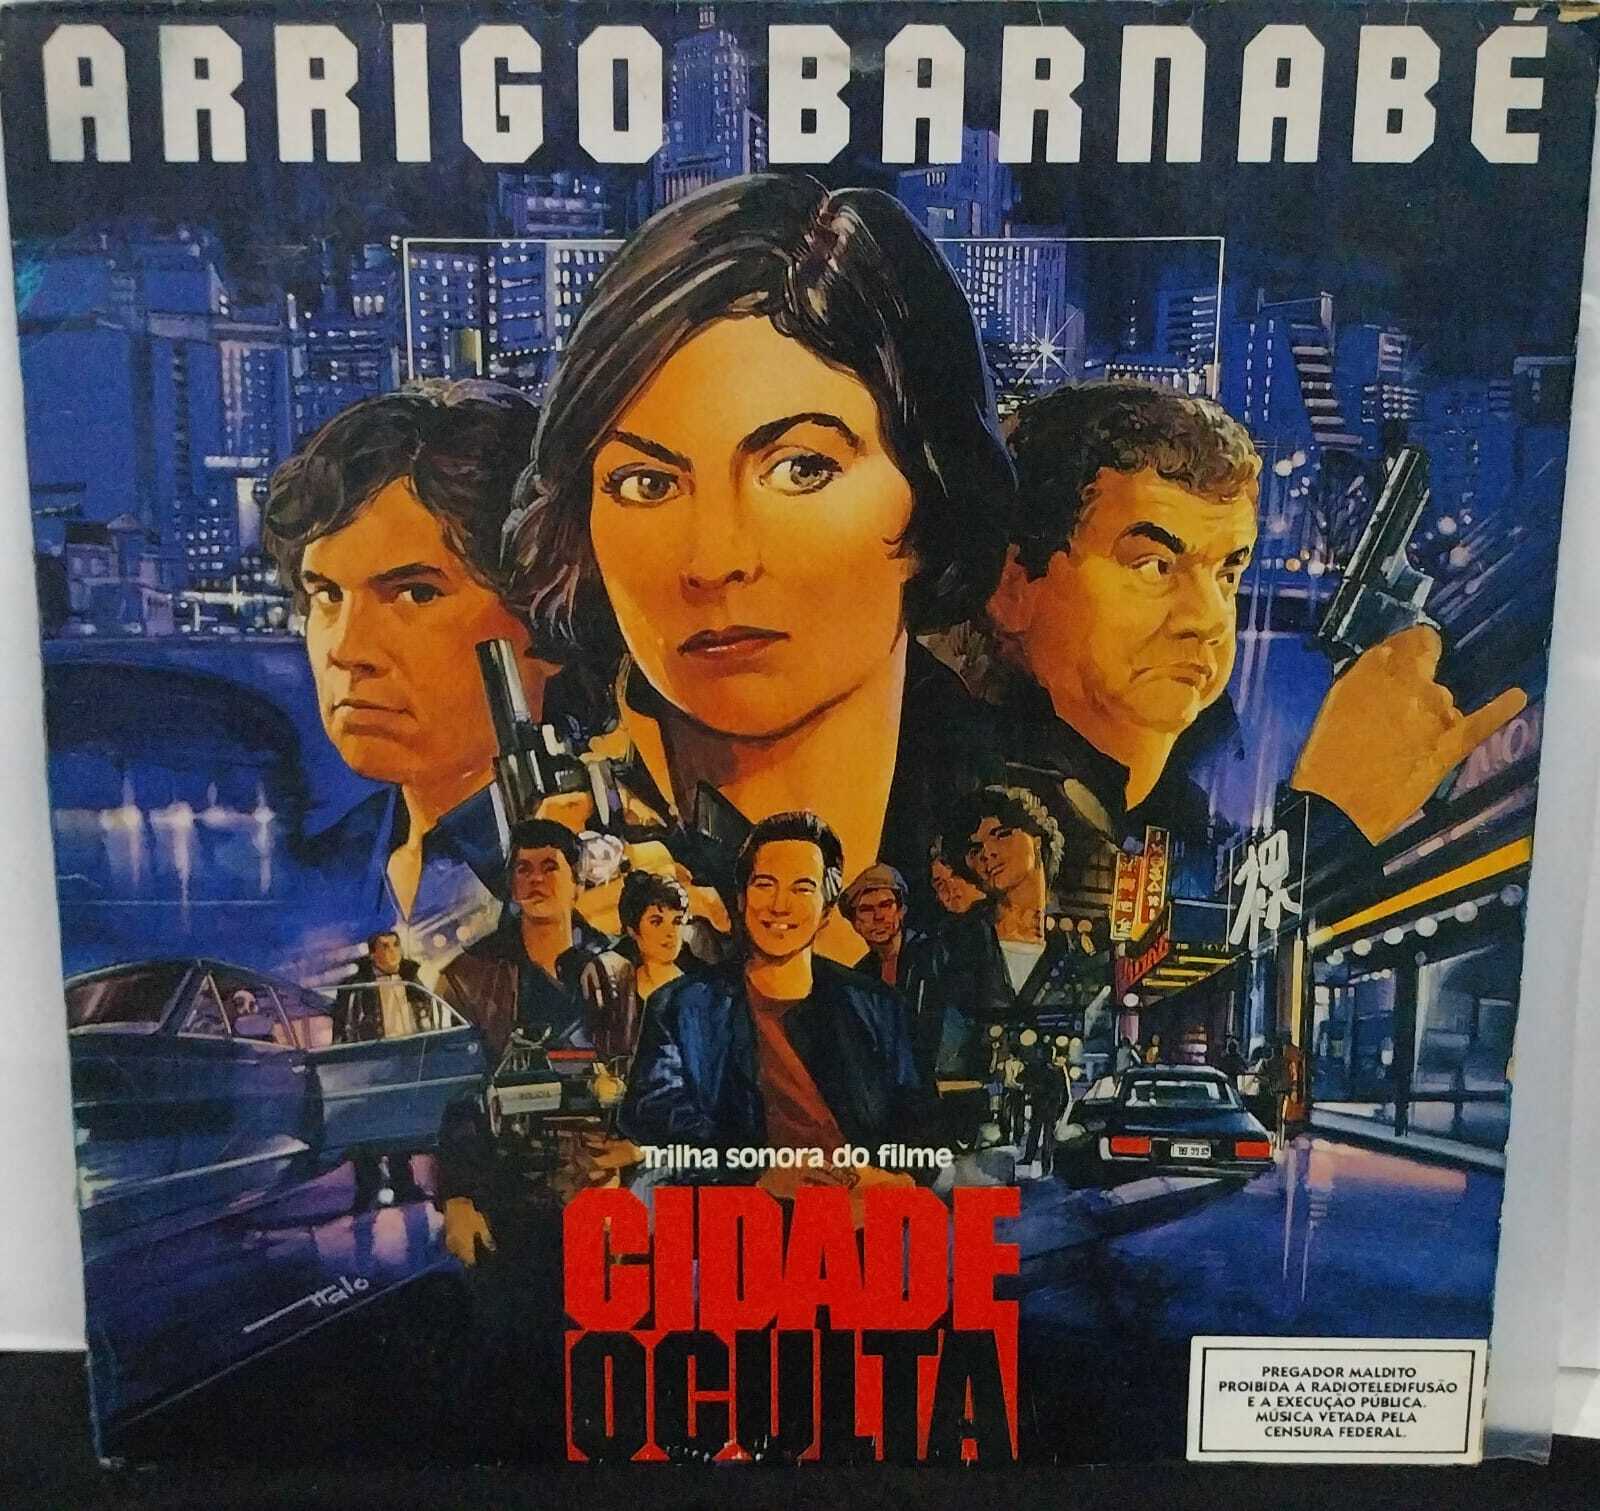 Vinil - Arrigo Barnabé - Trilha Sonora do Filme Cidade Oculta